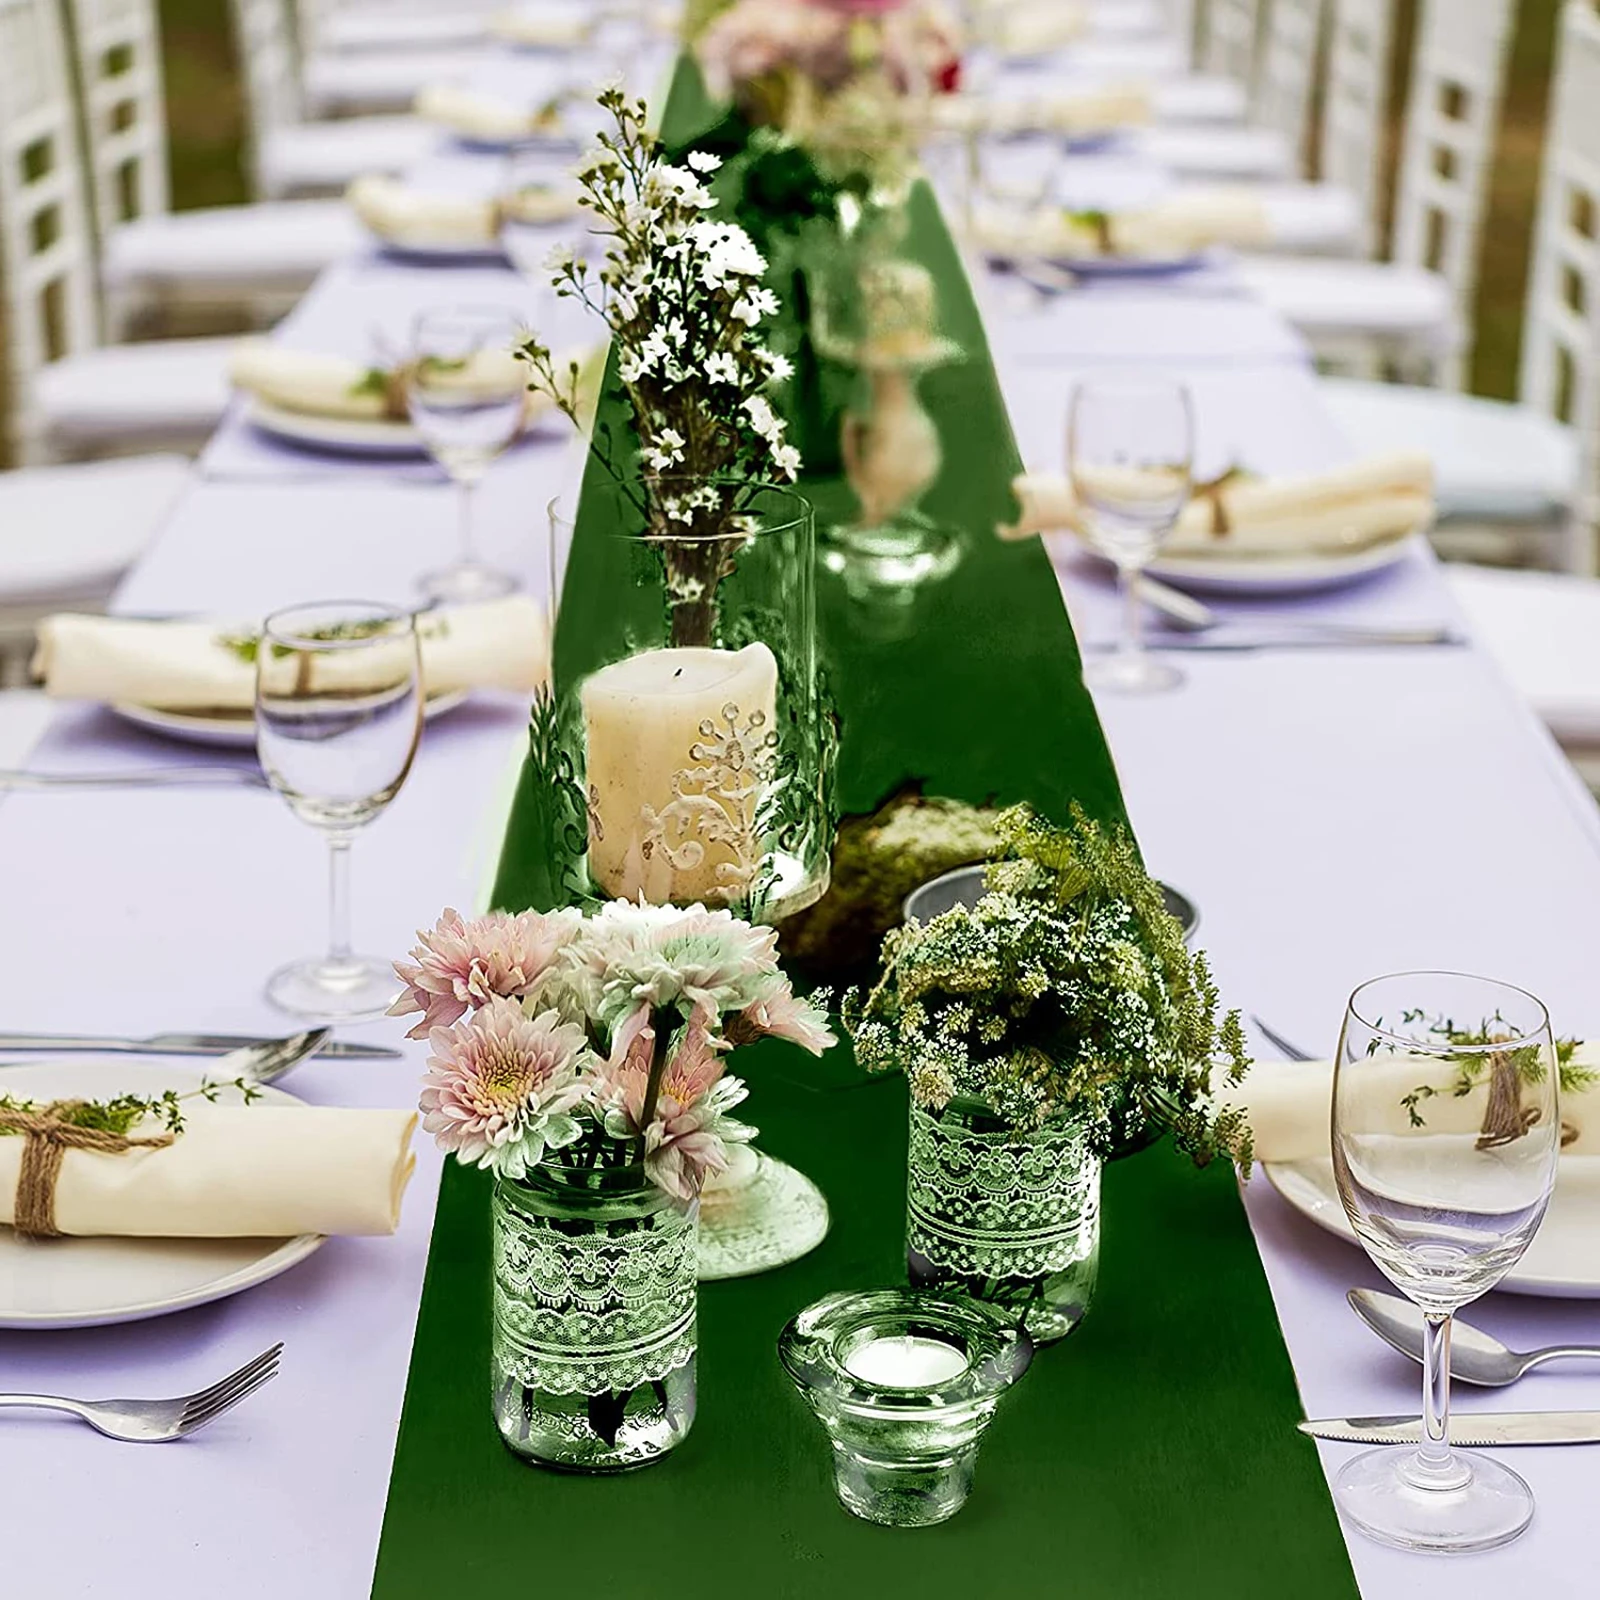 6 paket düğün saten orman yeşil uzun parlak ipek akşam yemeği parti masa koşucu düğün ziyafet için doğum günü partisi süslemeleri yeni